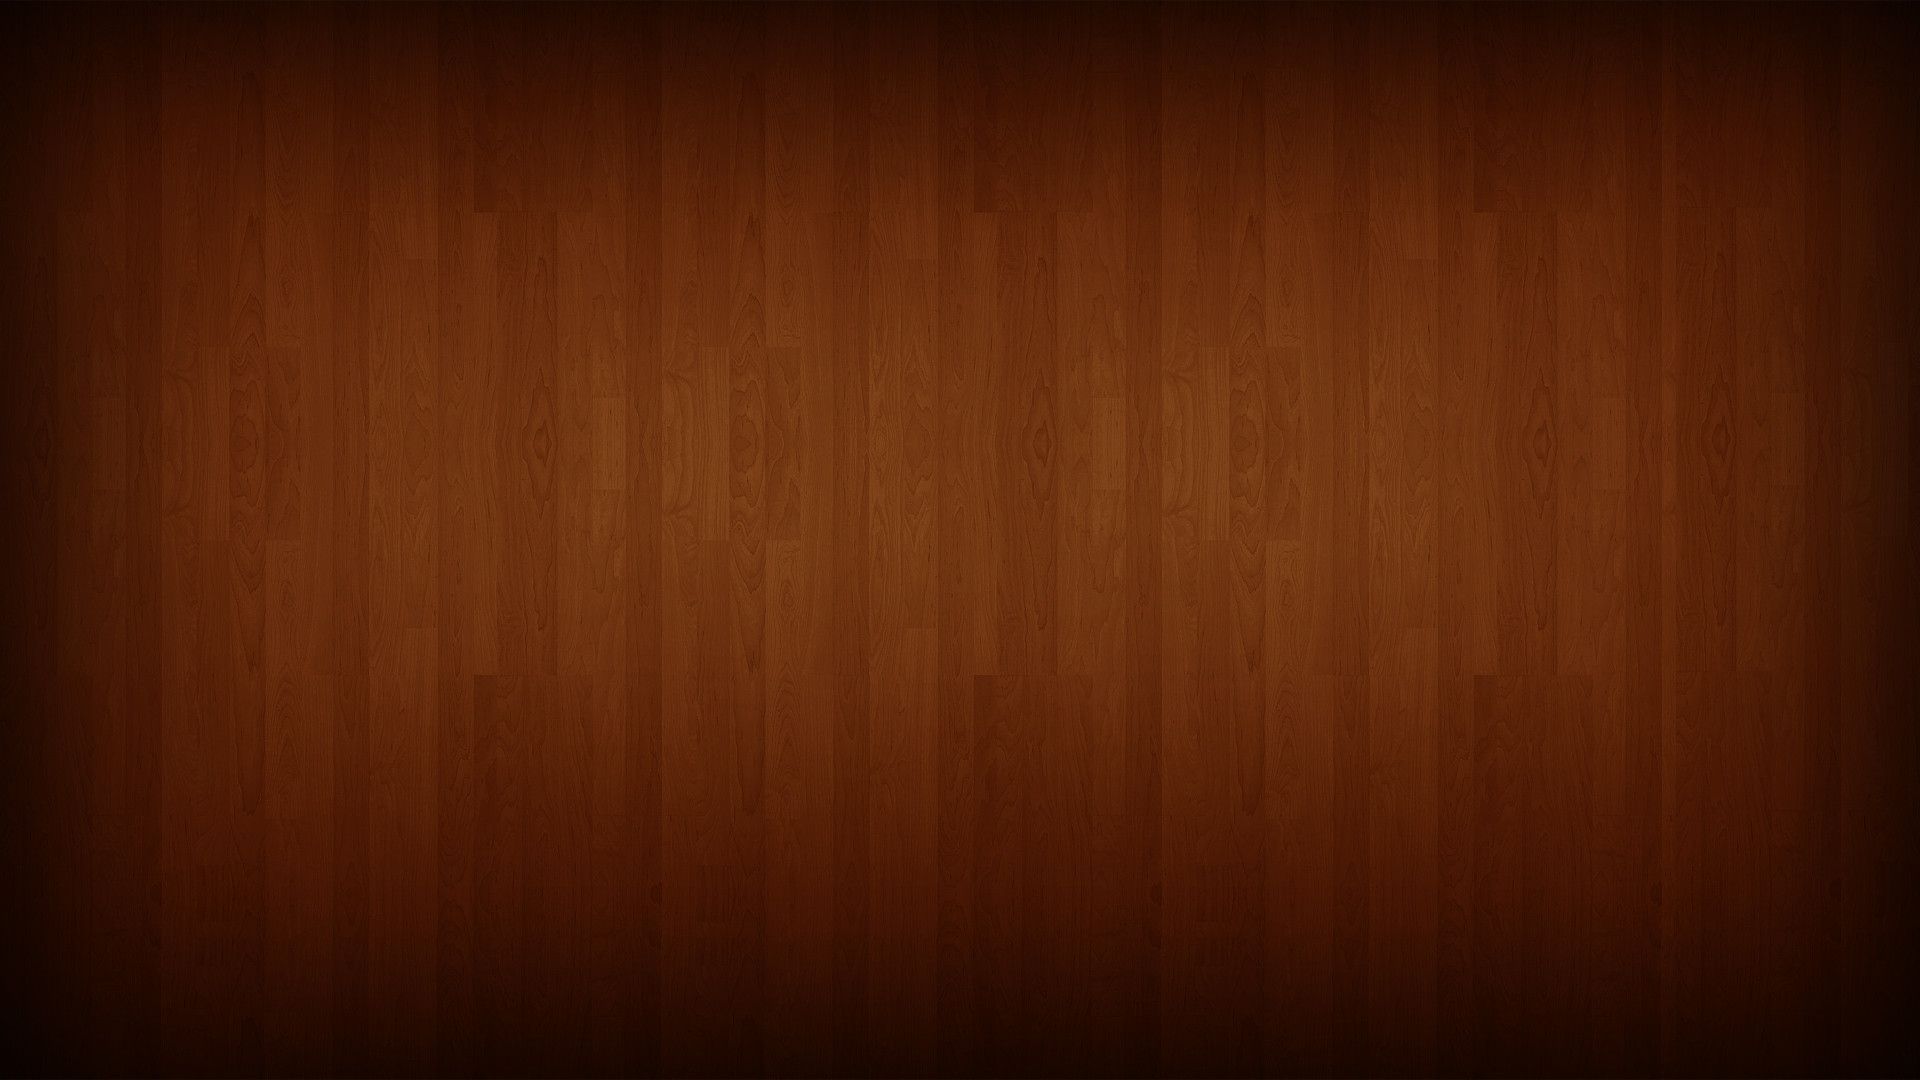 Wood Wallpaper 1080p